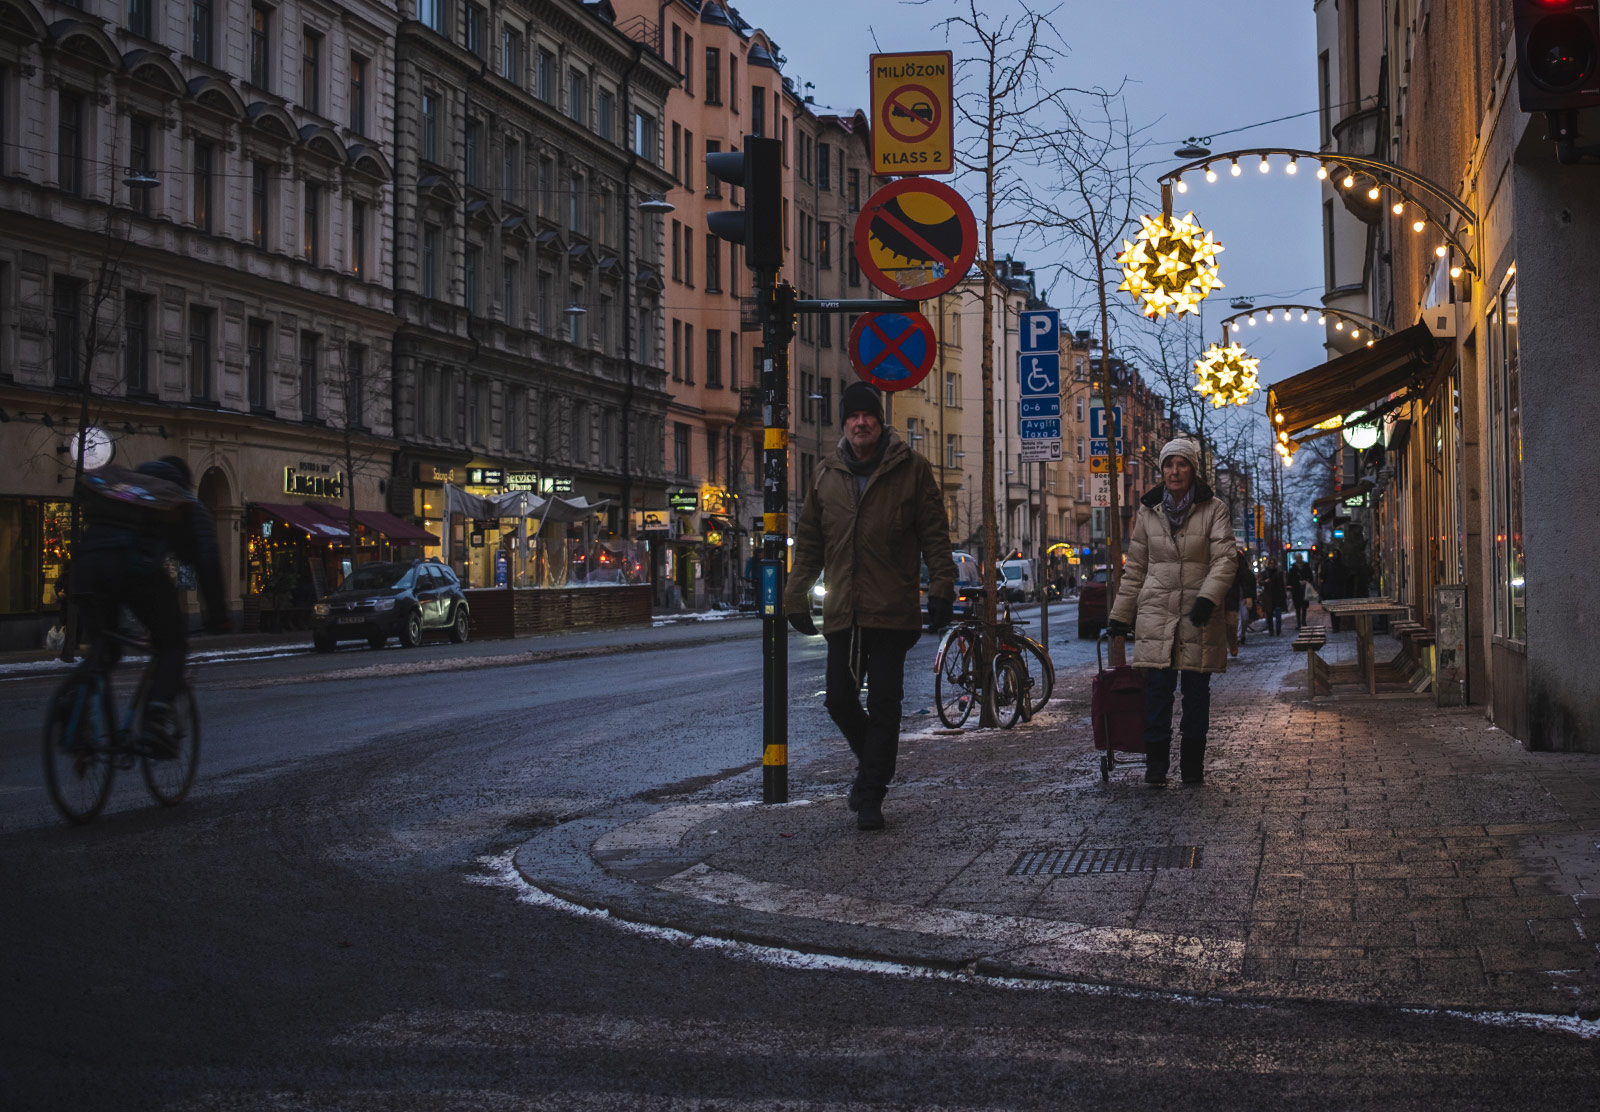 People walking on lit street